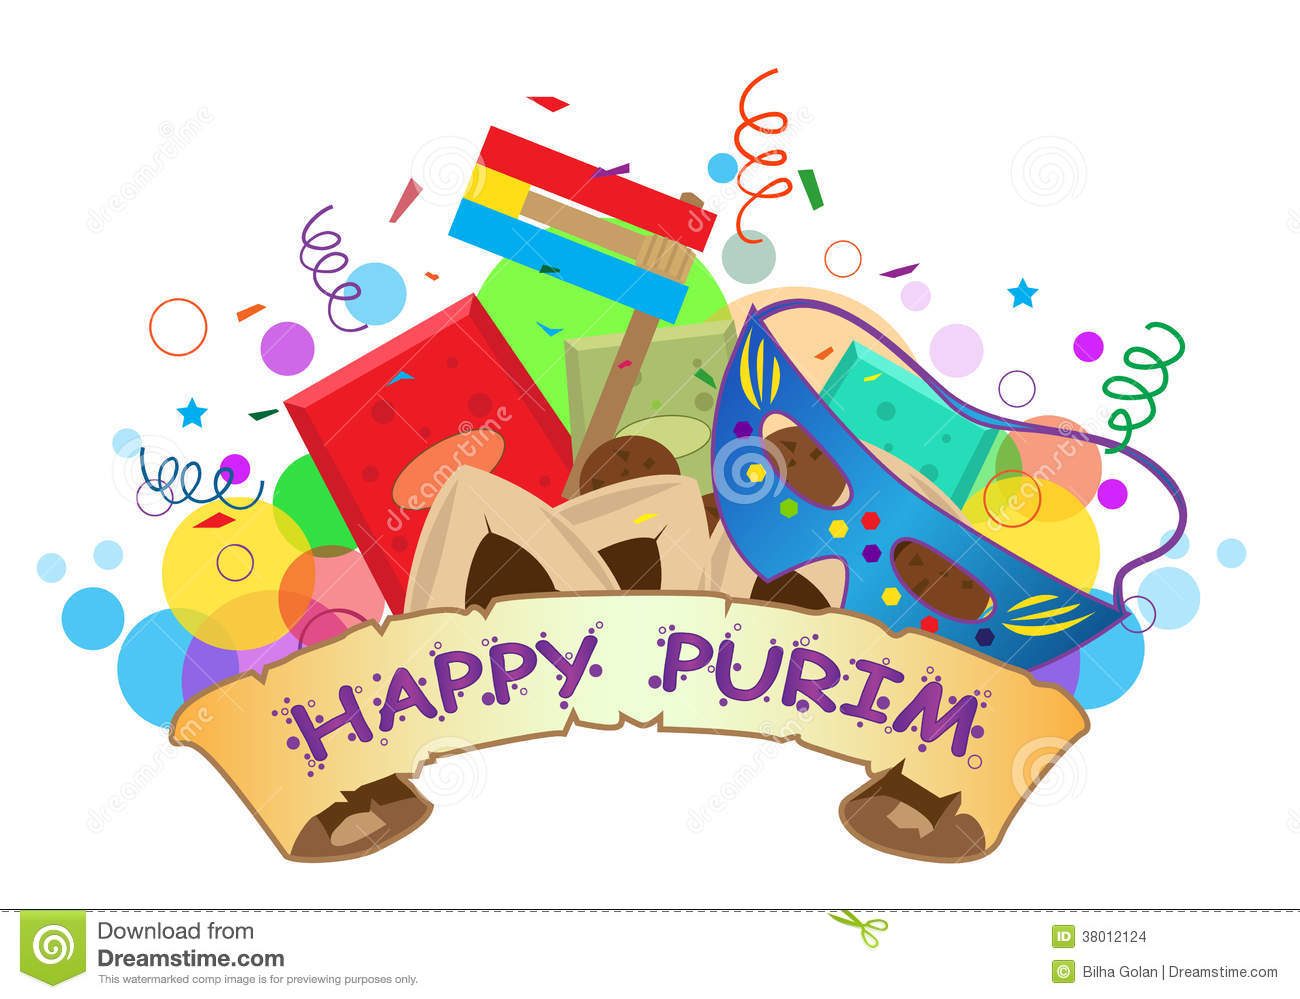 ... Purim - Cheerful Jewish h